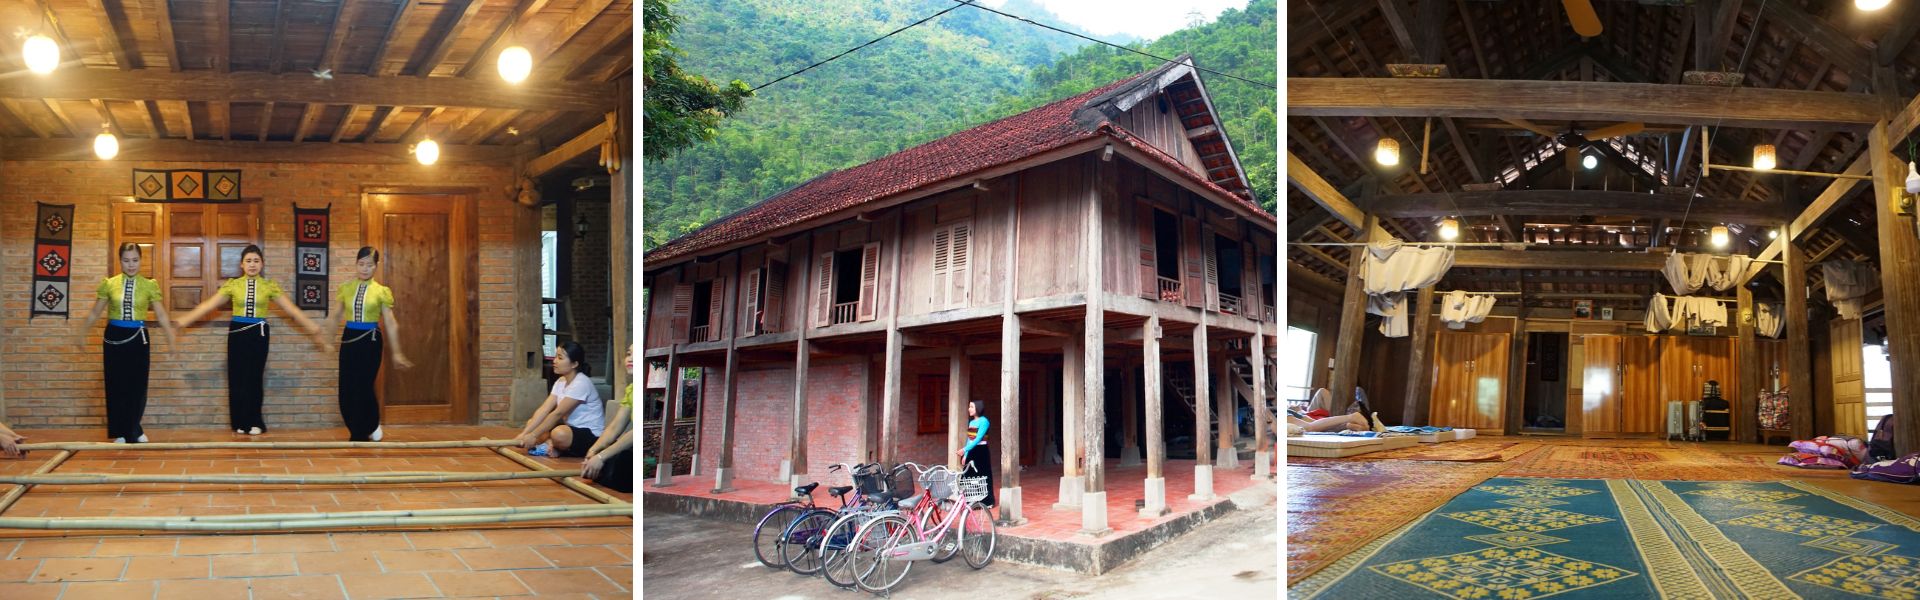 La casa del Sr. Cuong en Mai Chau